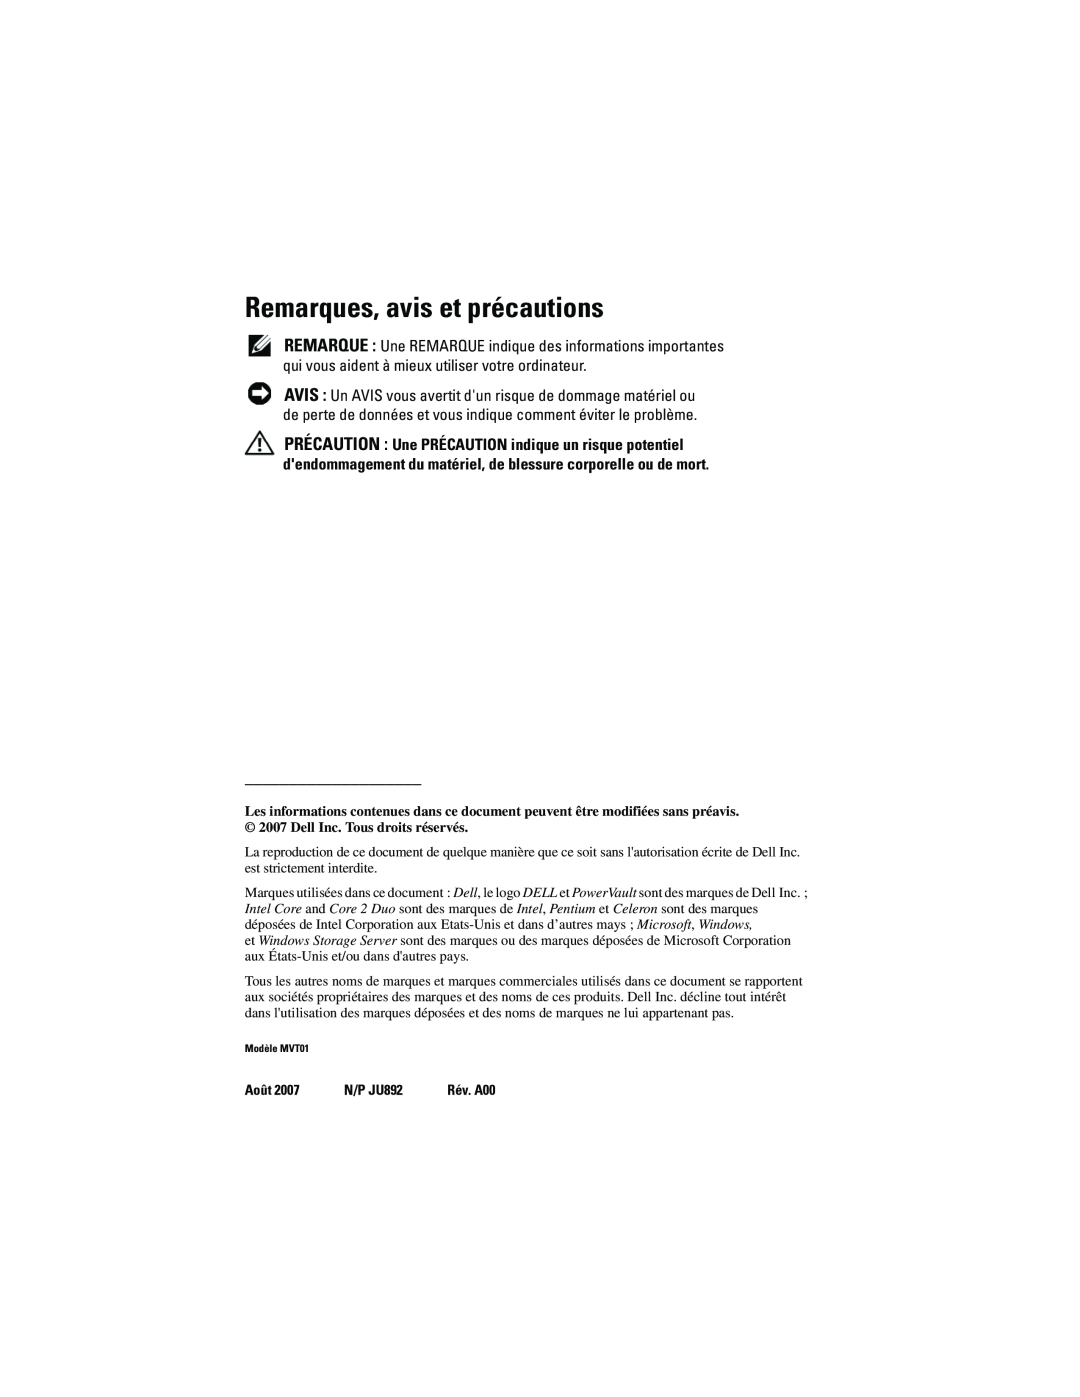 Dell MVT01 manual Remarques, avis et précautions, Août, N/P JU892 